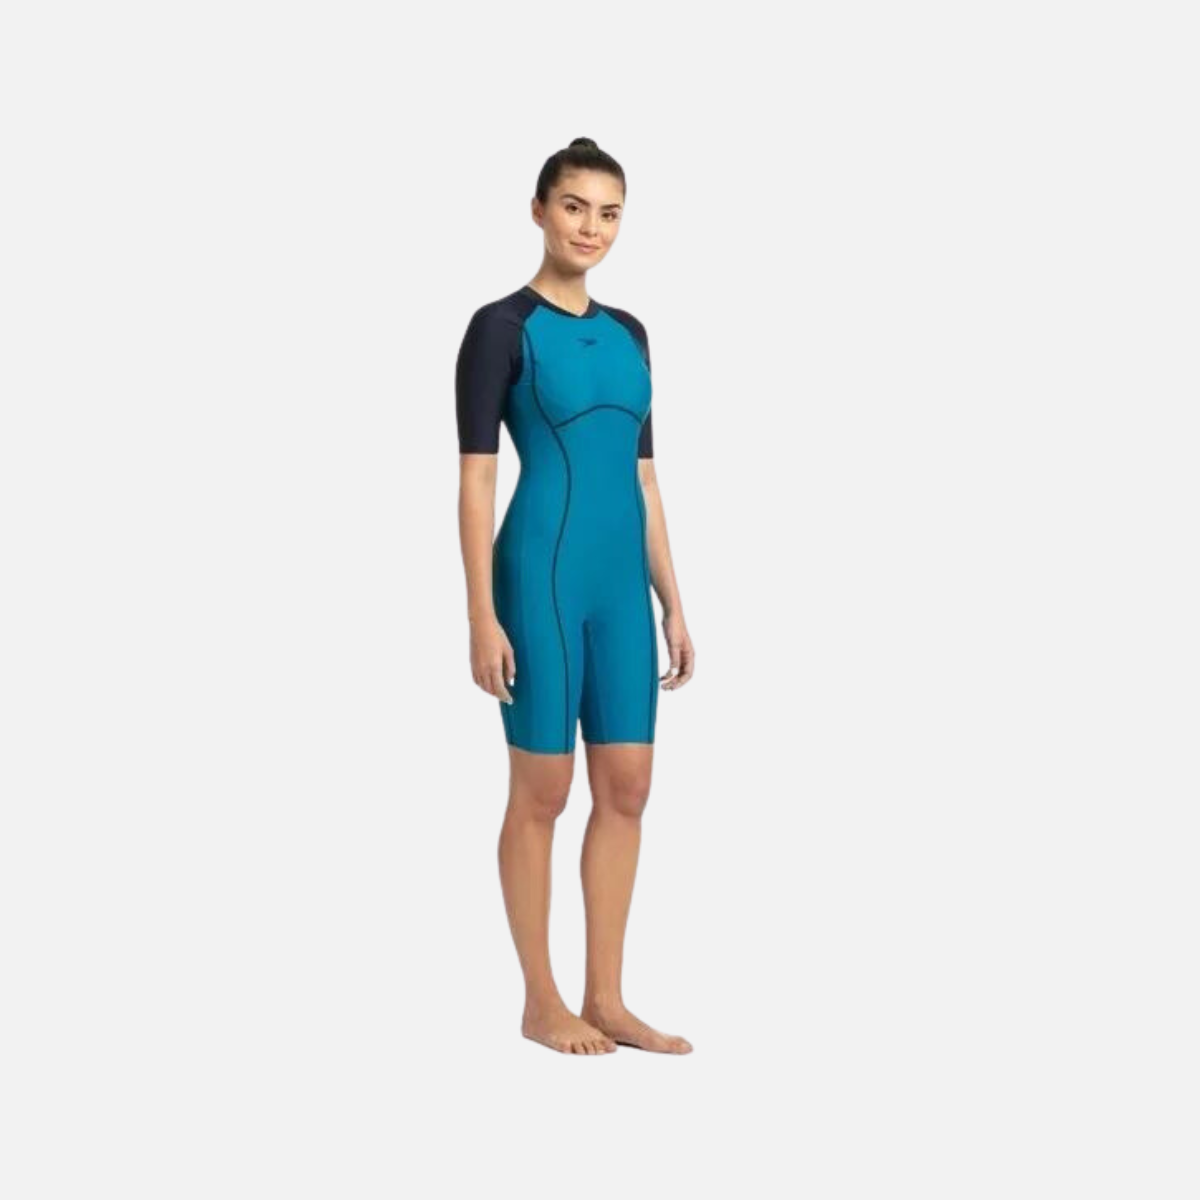 Speedo Essential Splice Kneesuit Women's Swimsuit - Nordic Teal/True Navy